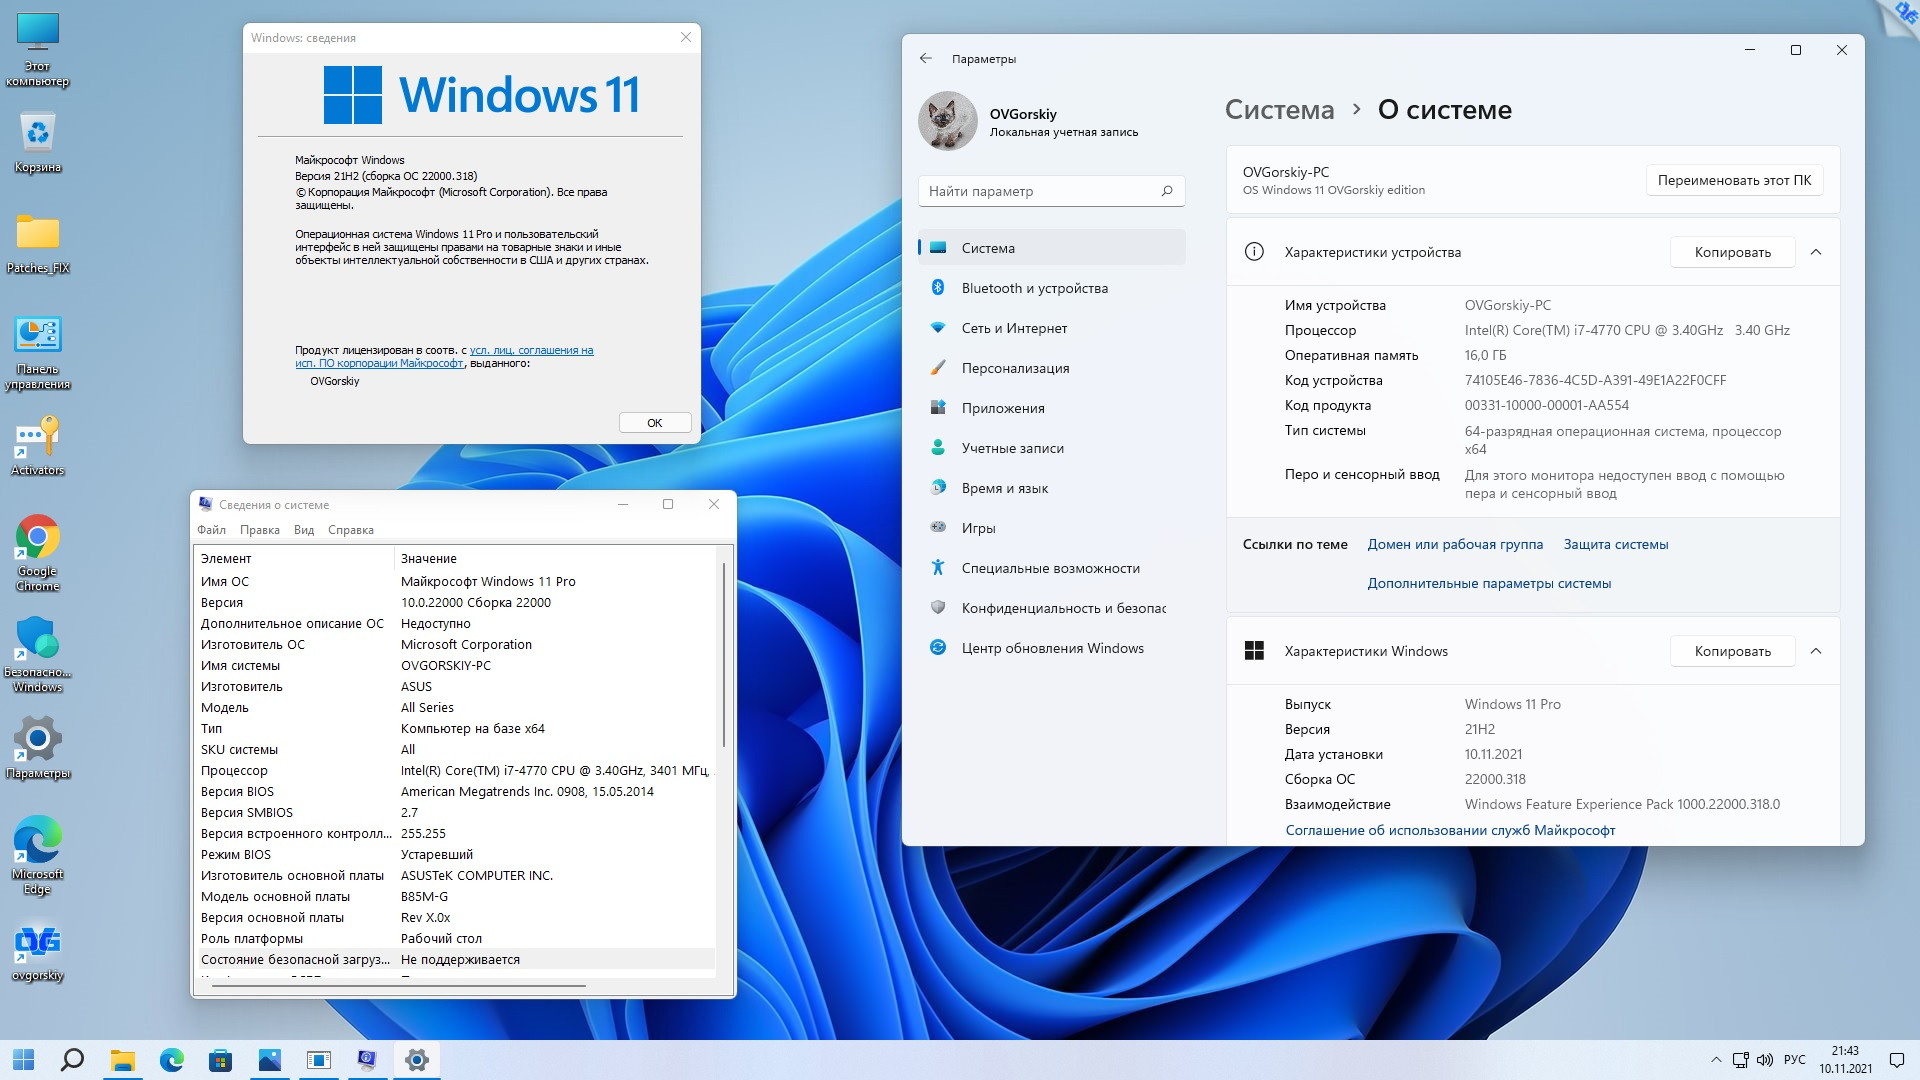 Microsoft® Windows® 11 Professional VL x64 21H2 RU by OVGorskiy 11.2021